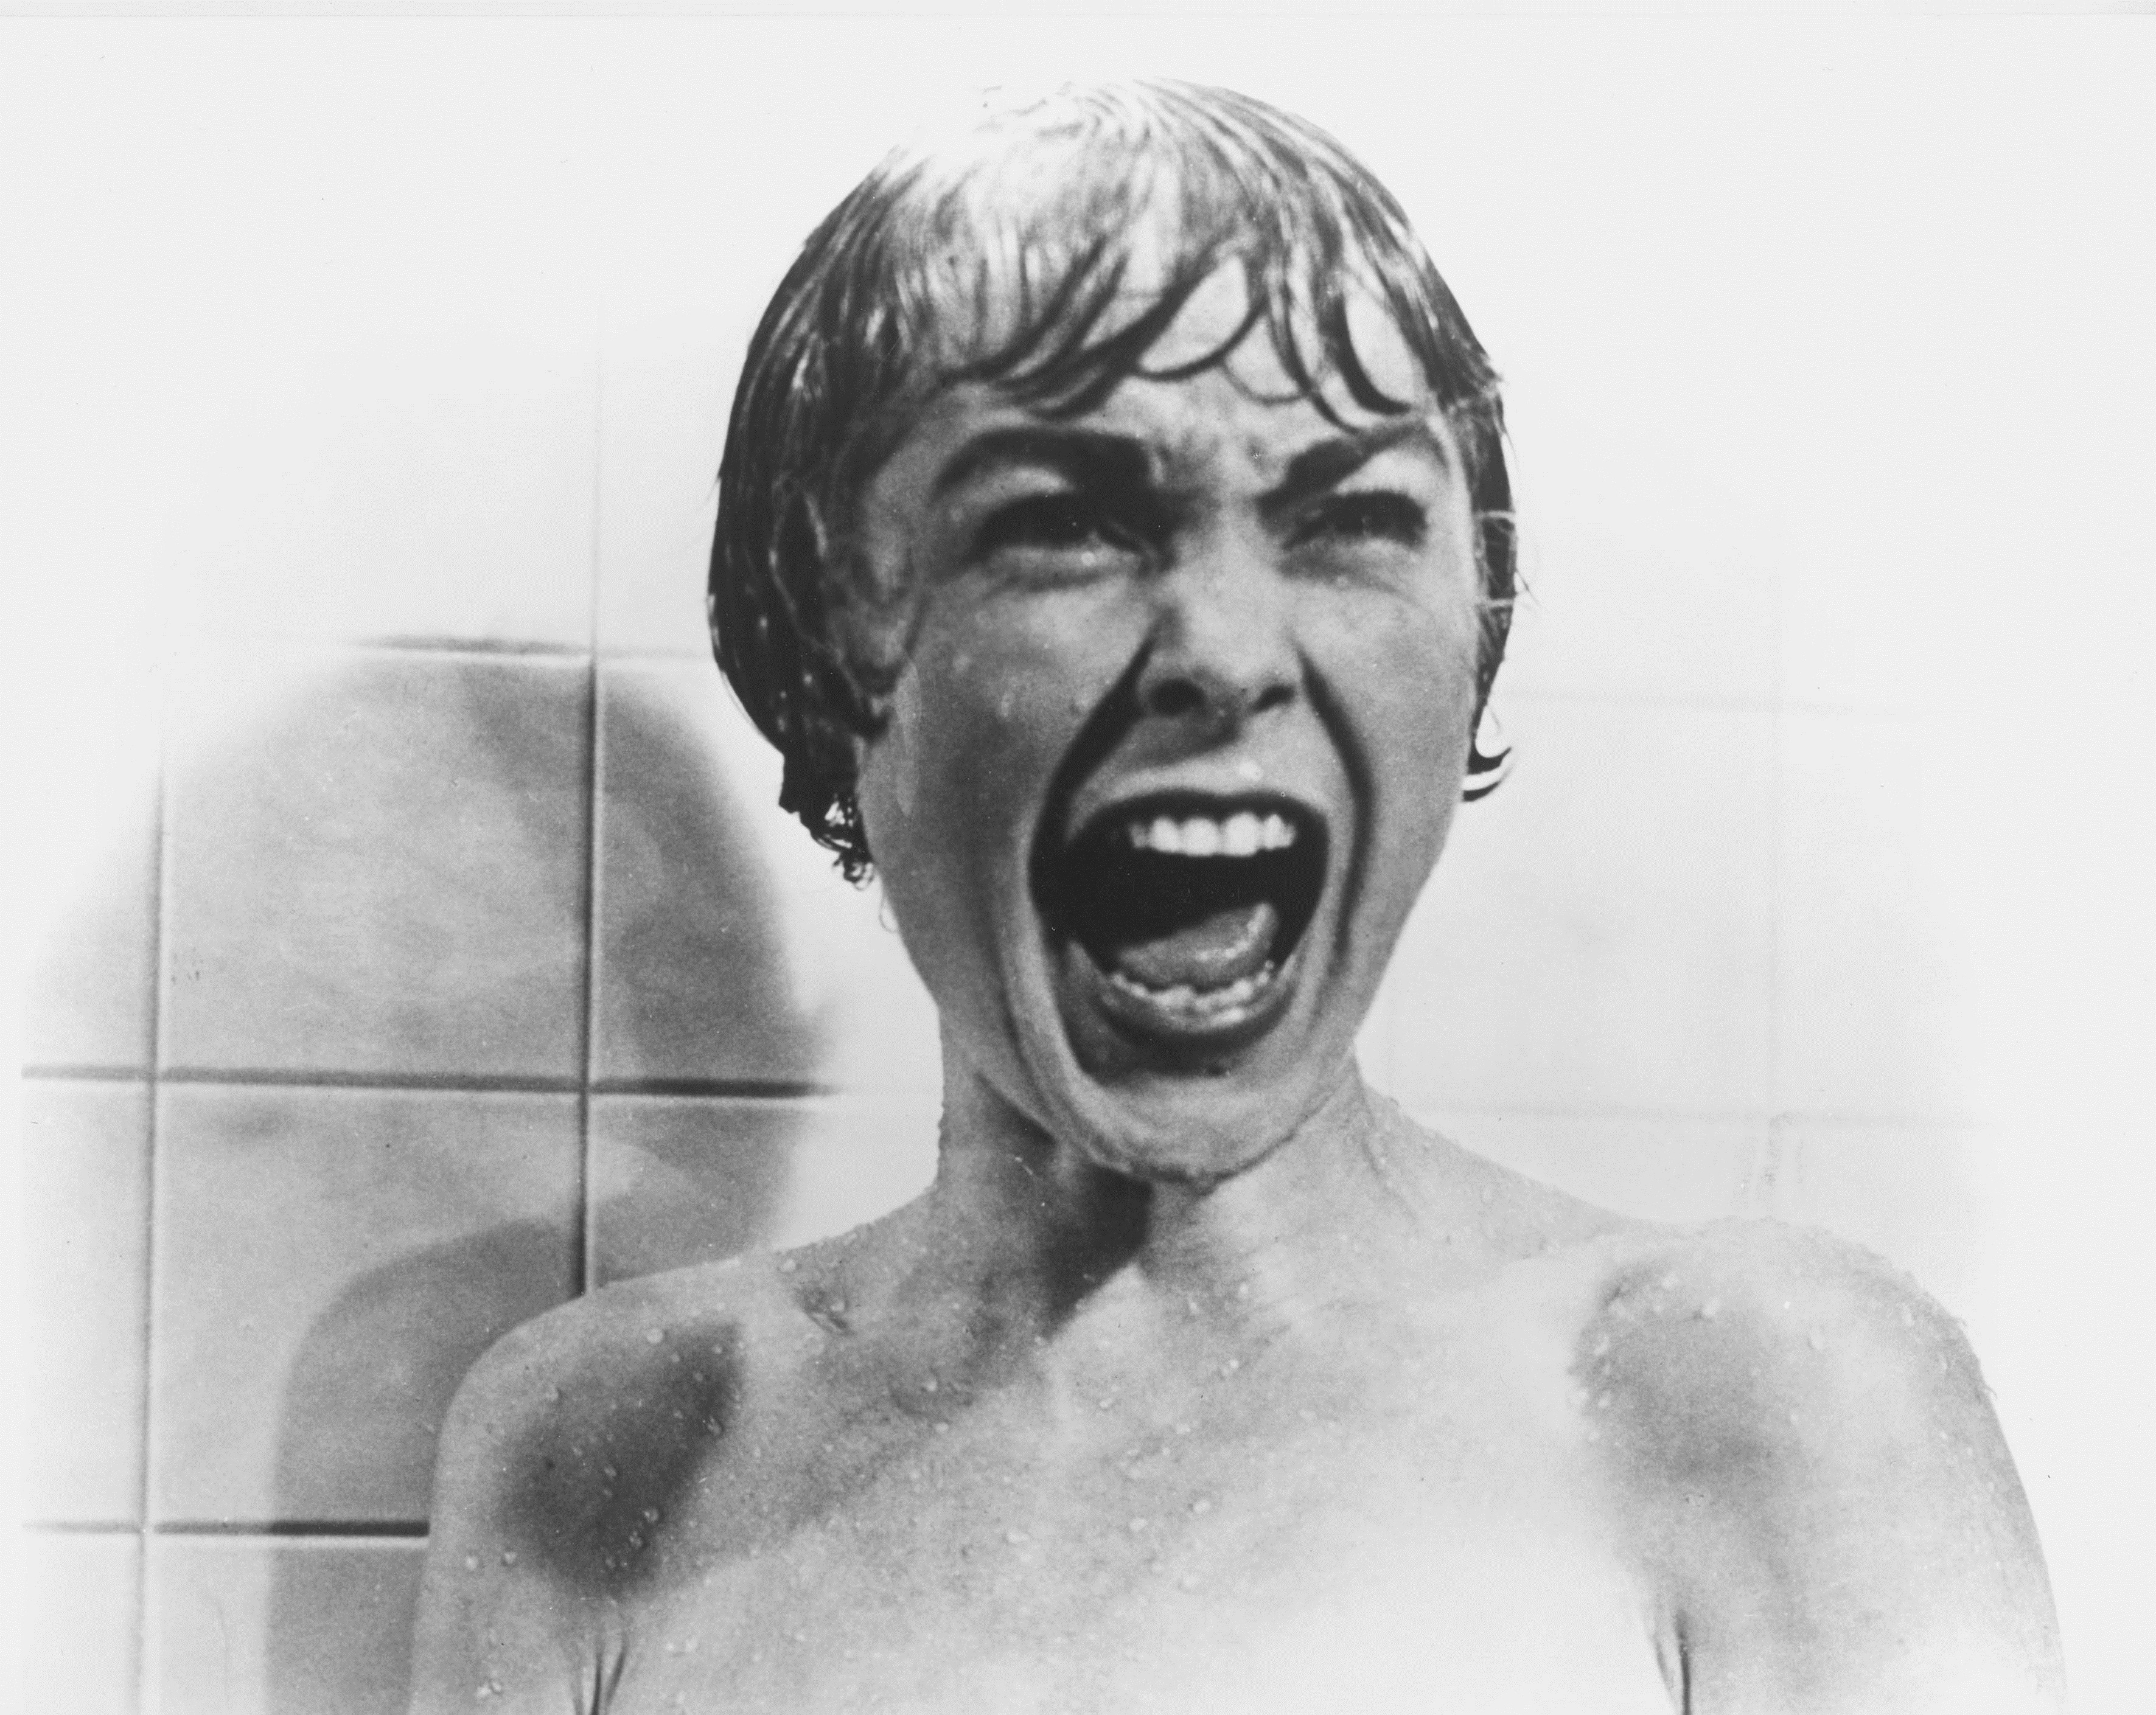 La celebre scena della doccia in Psyco con Janet Leigh